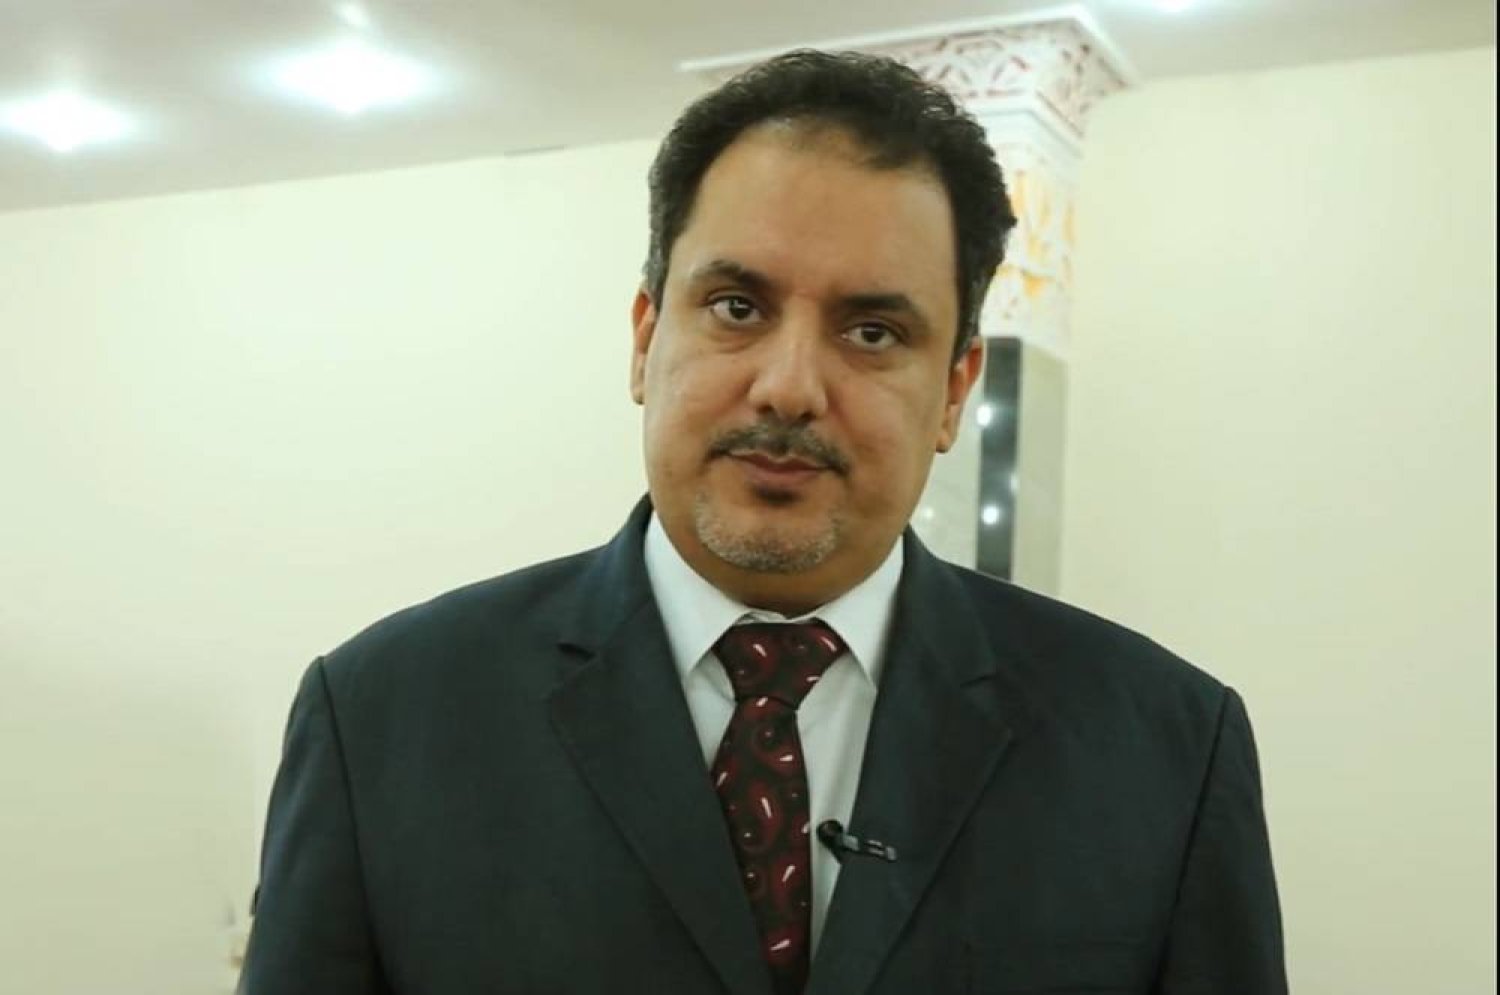 عضو مجلس النواب الليبي صالح أفحيمة (الشرق الأوسط)